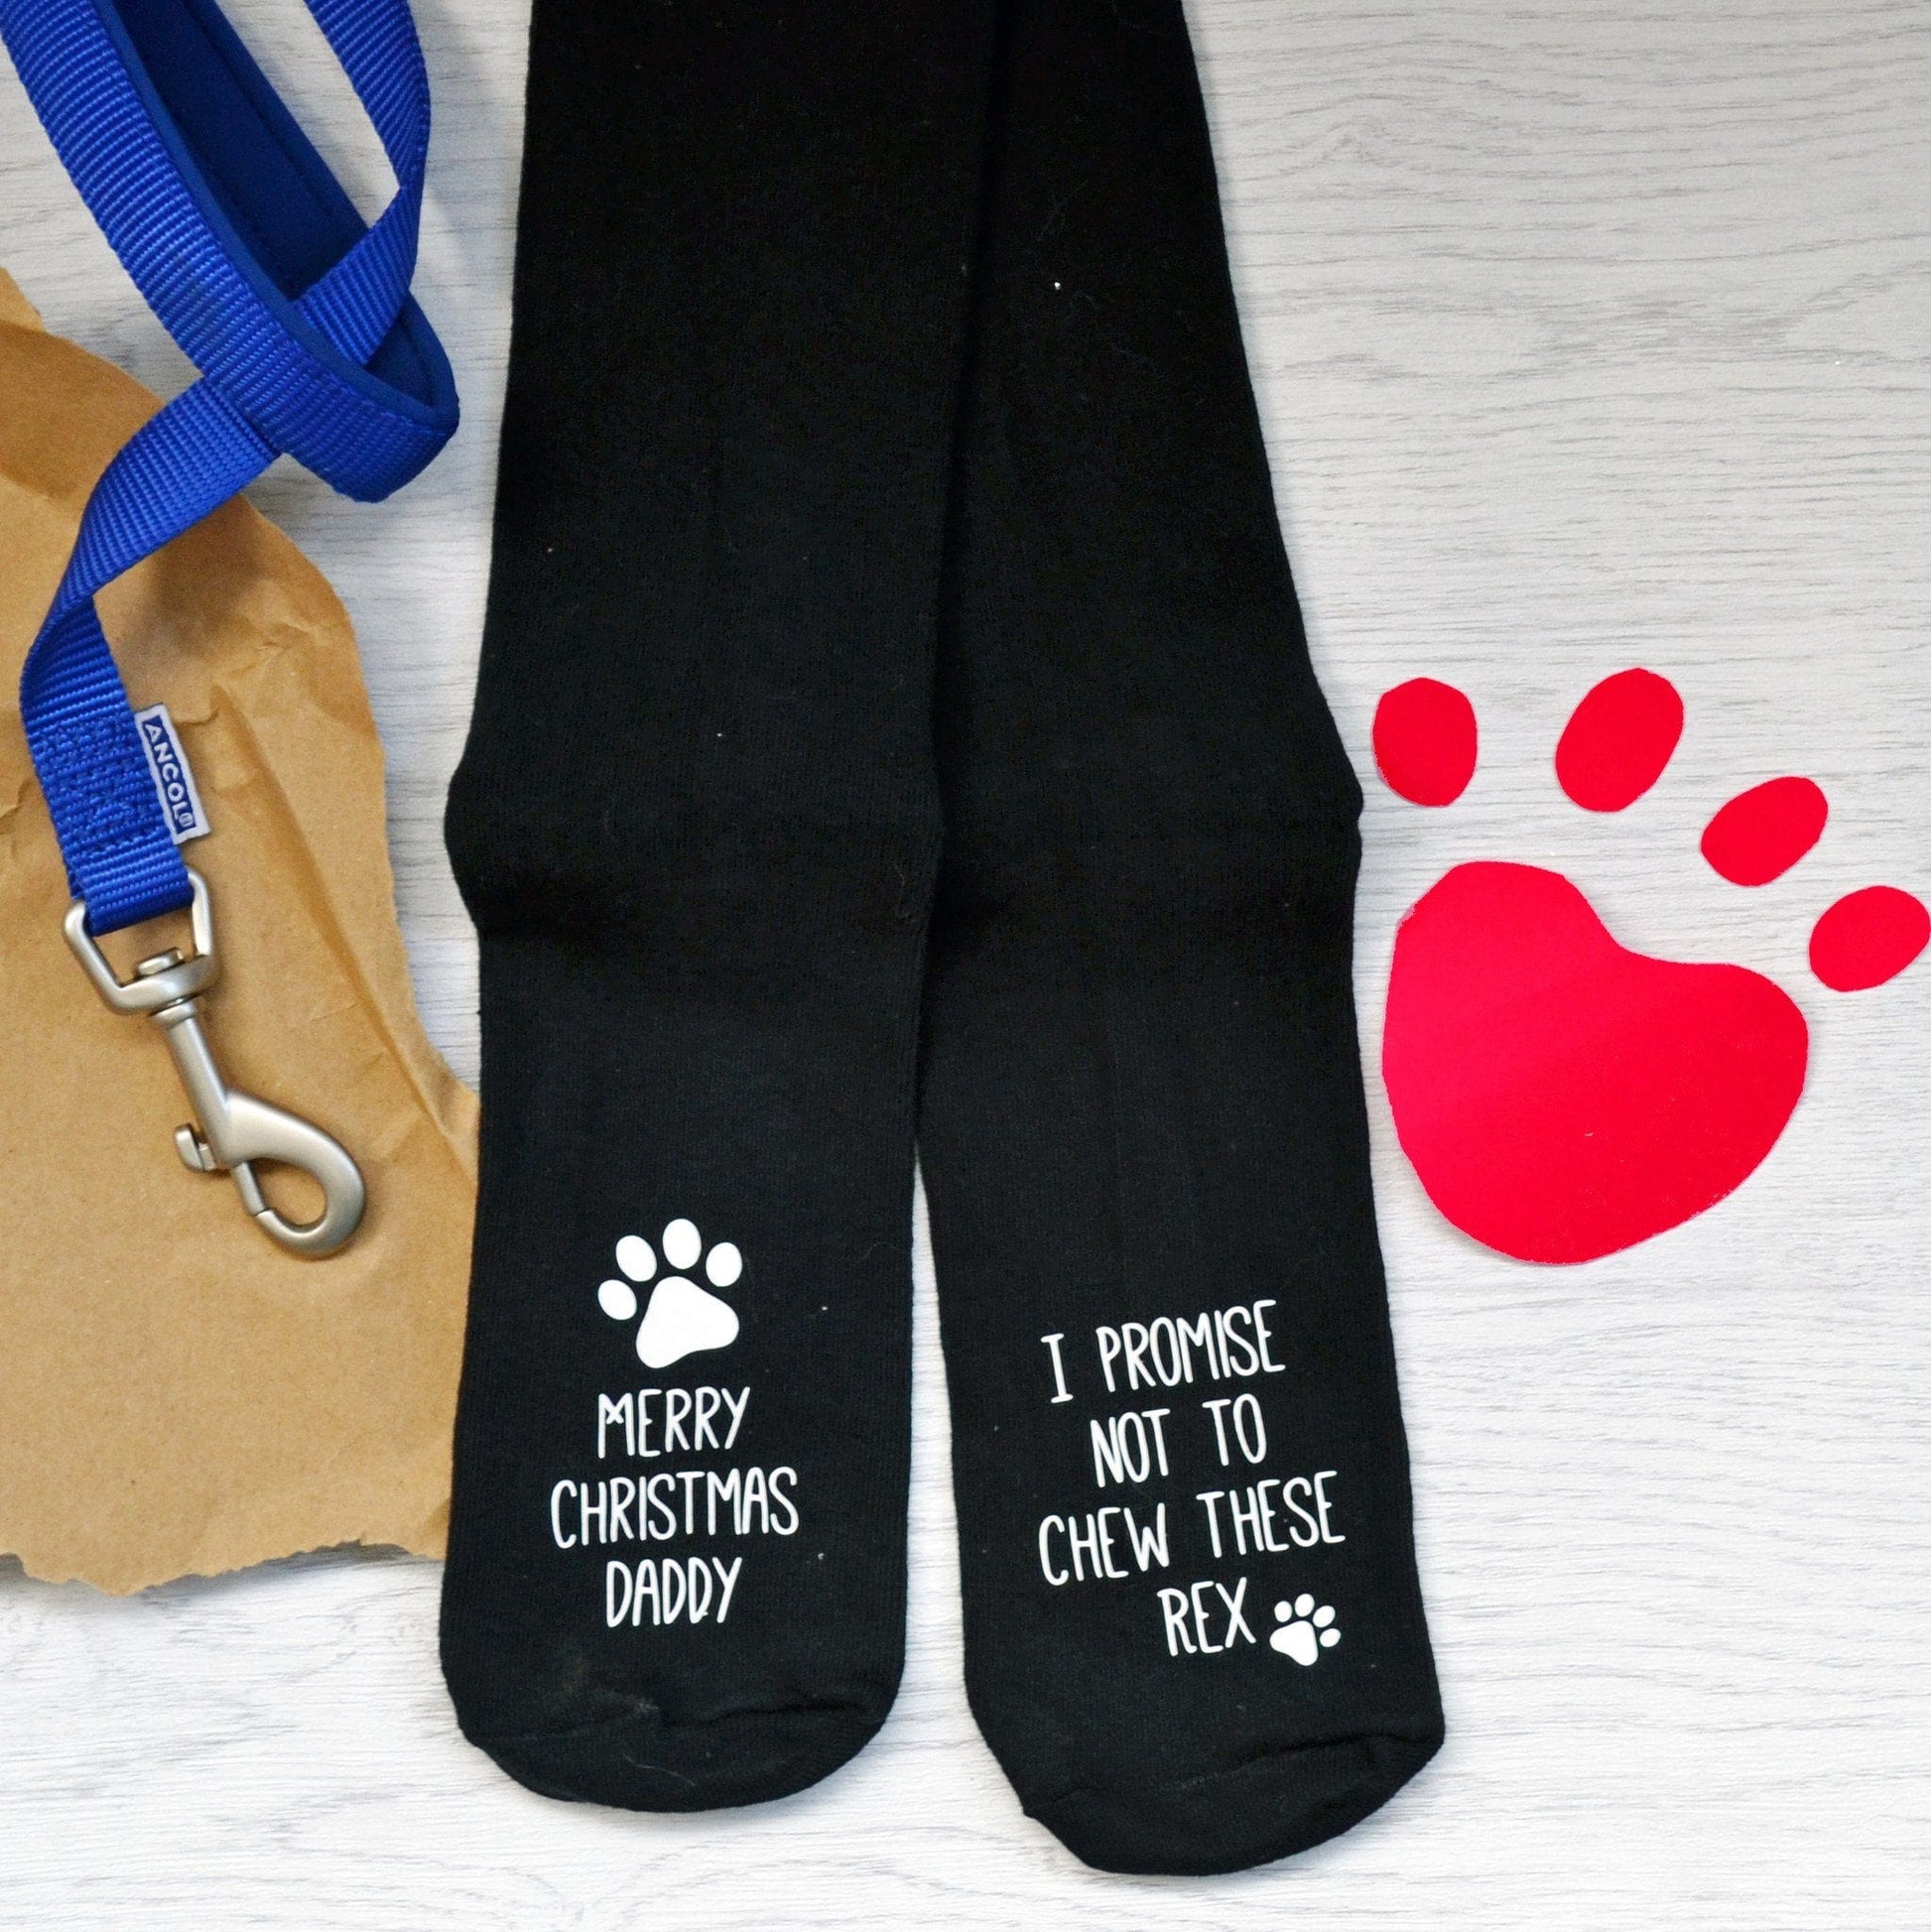 Christmas Socks From The Dog, socks, - ALPHS 